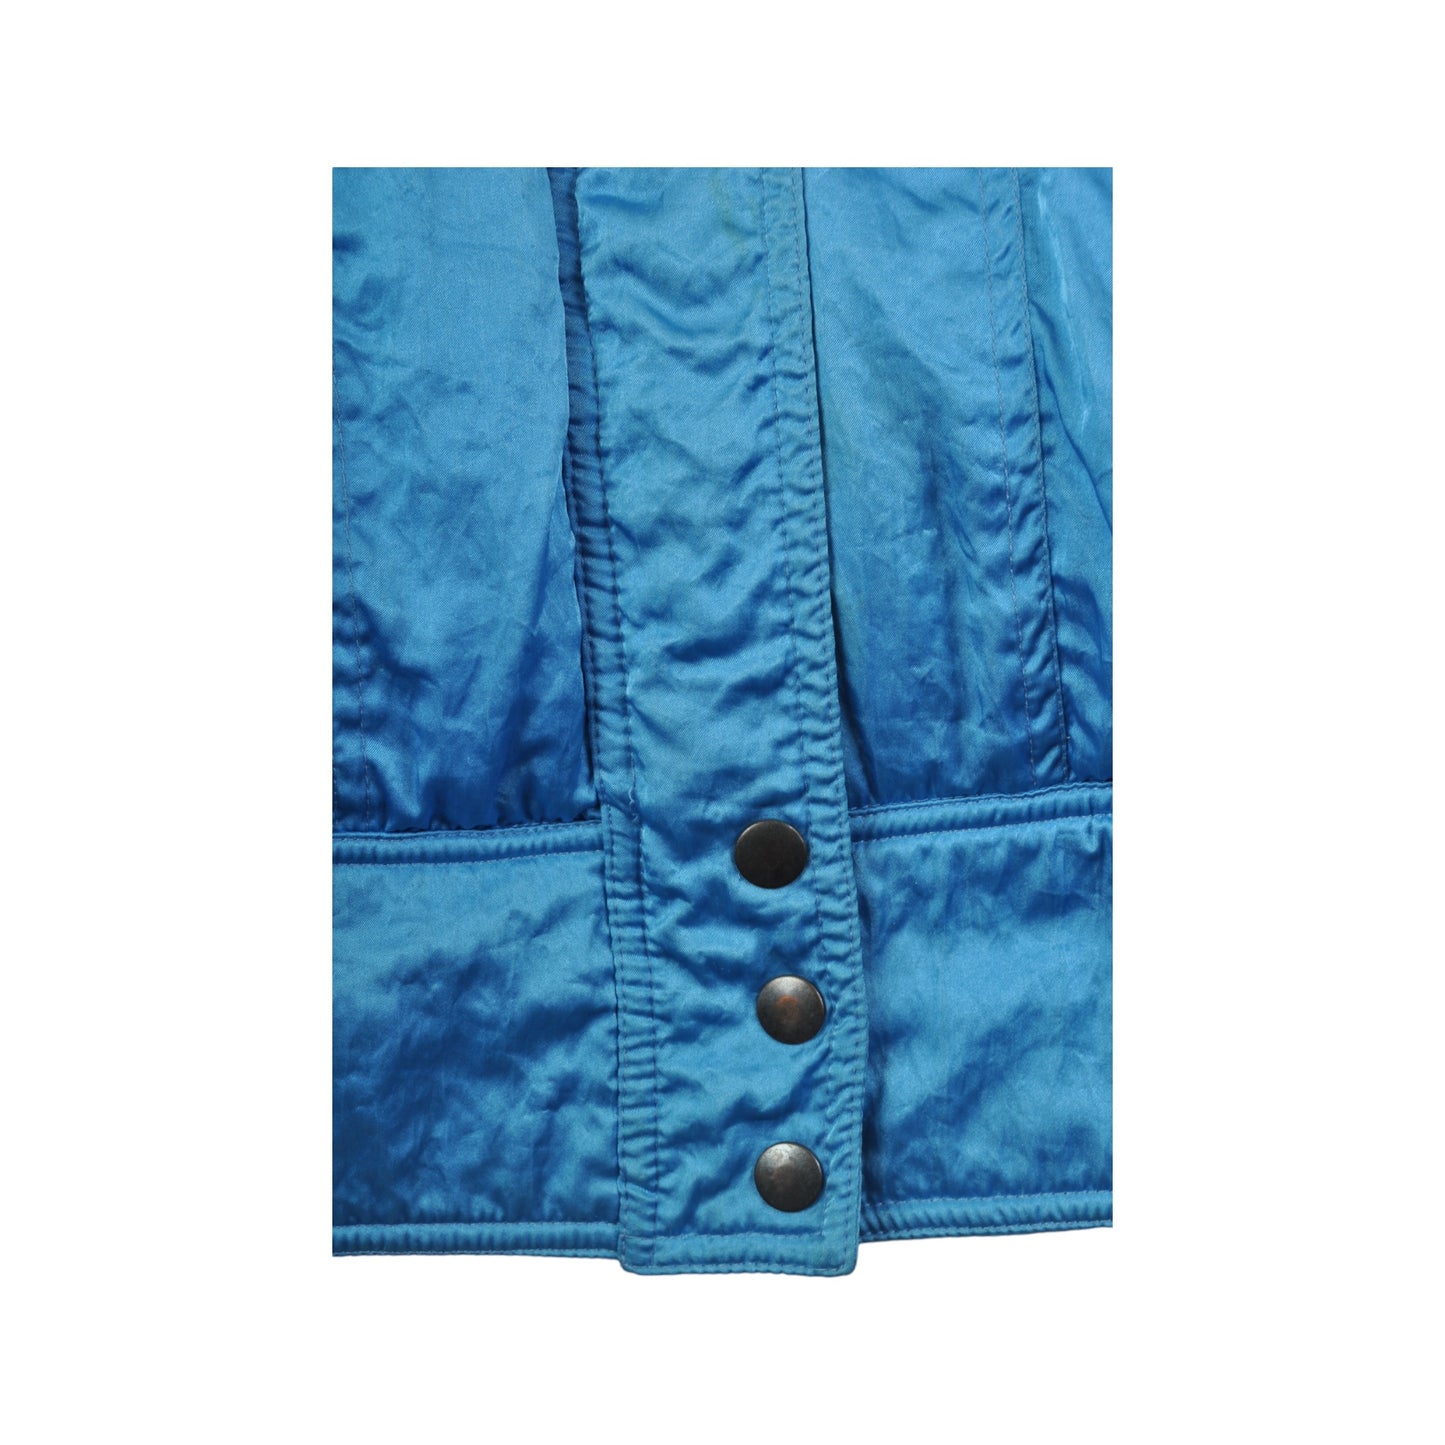 Vintage Ski Jacket 80s Style Blue Ladies Large